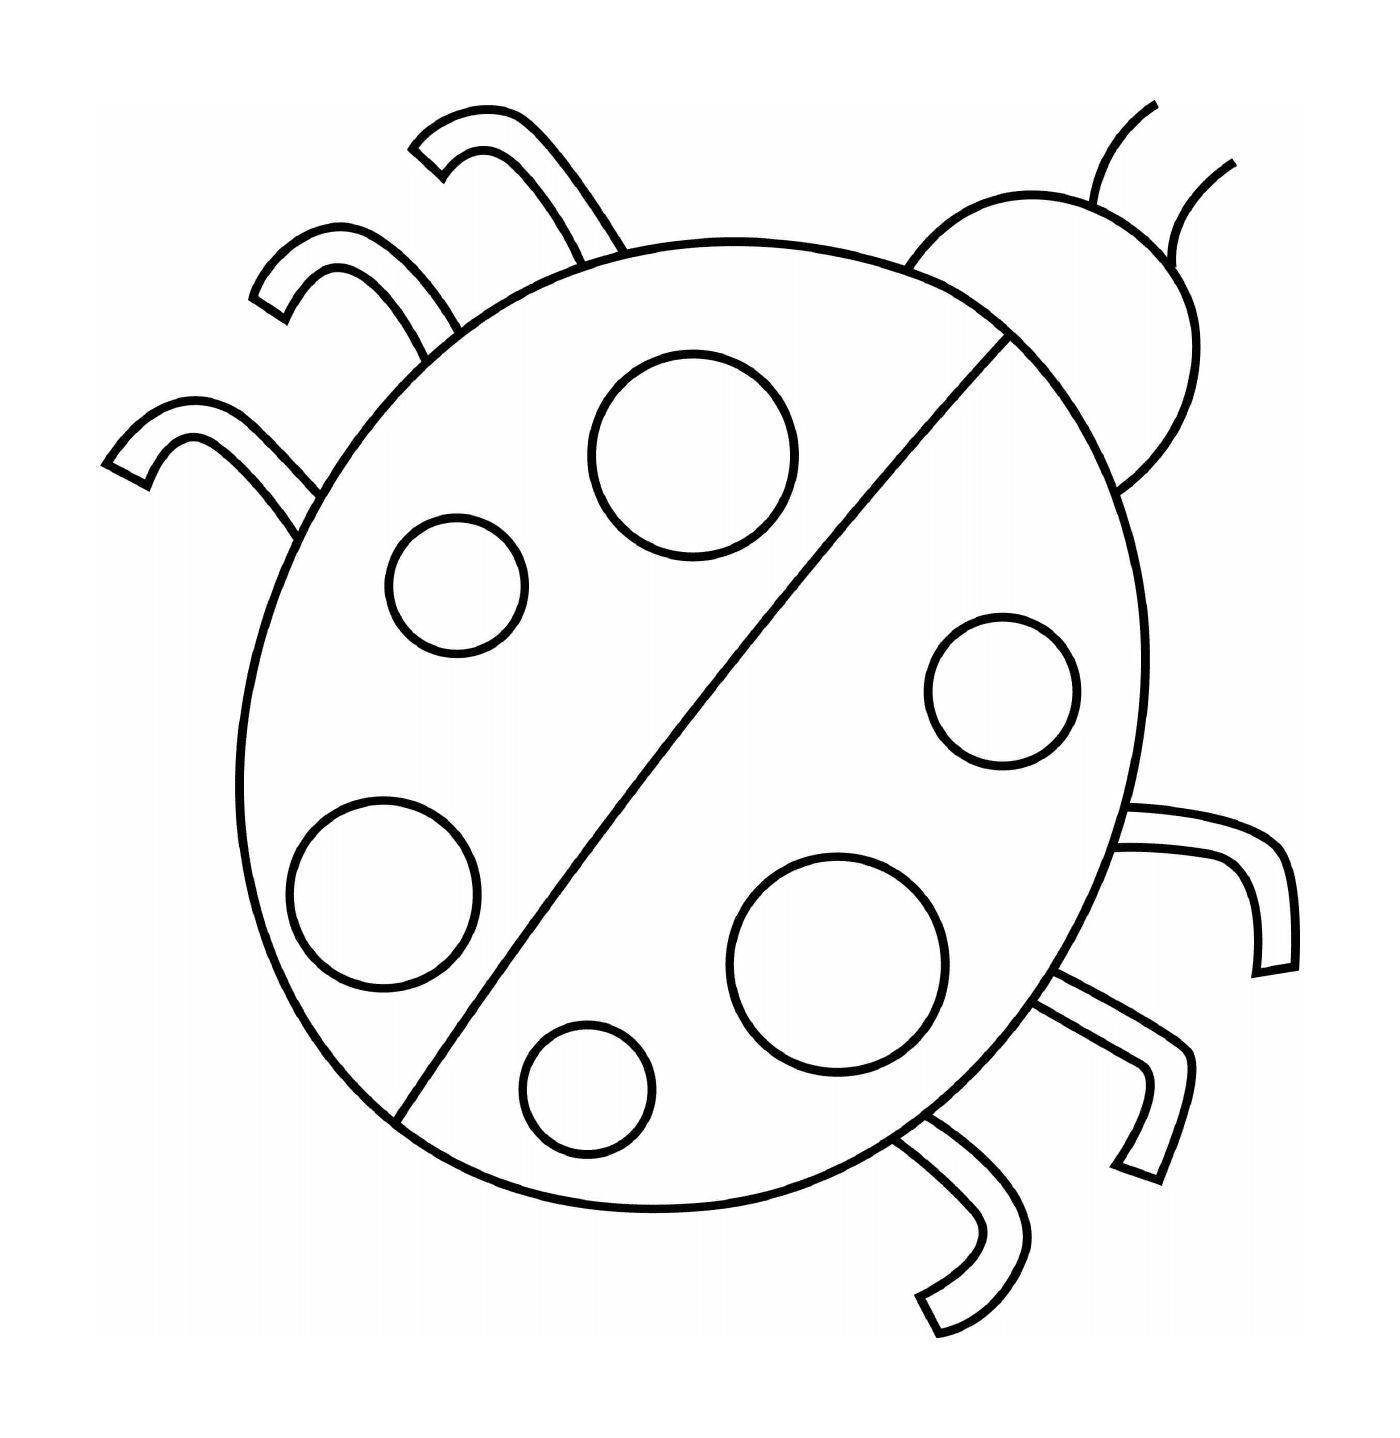  Einfach zu zeichnen, ein Marienkäfer 